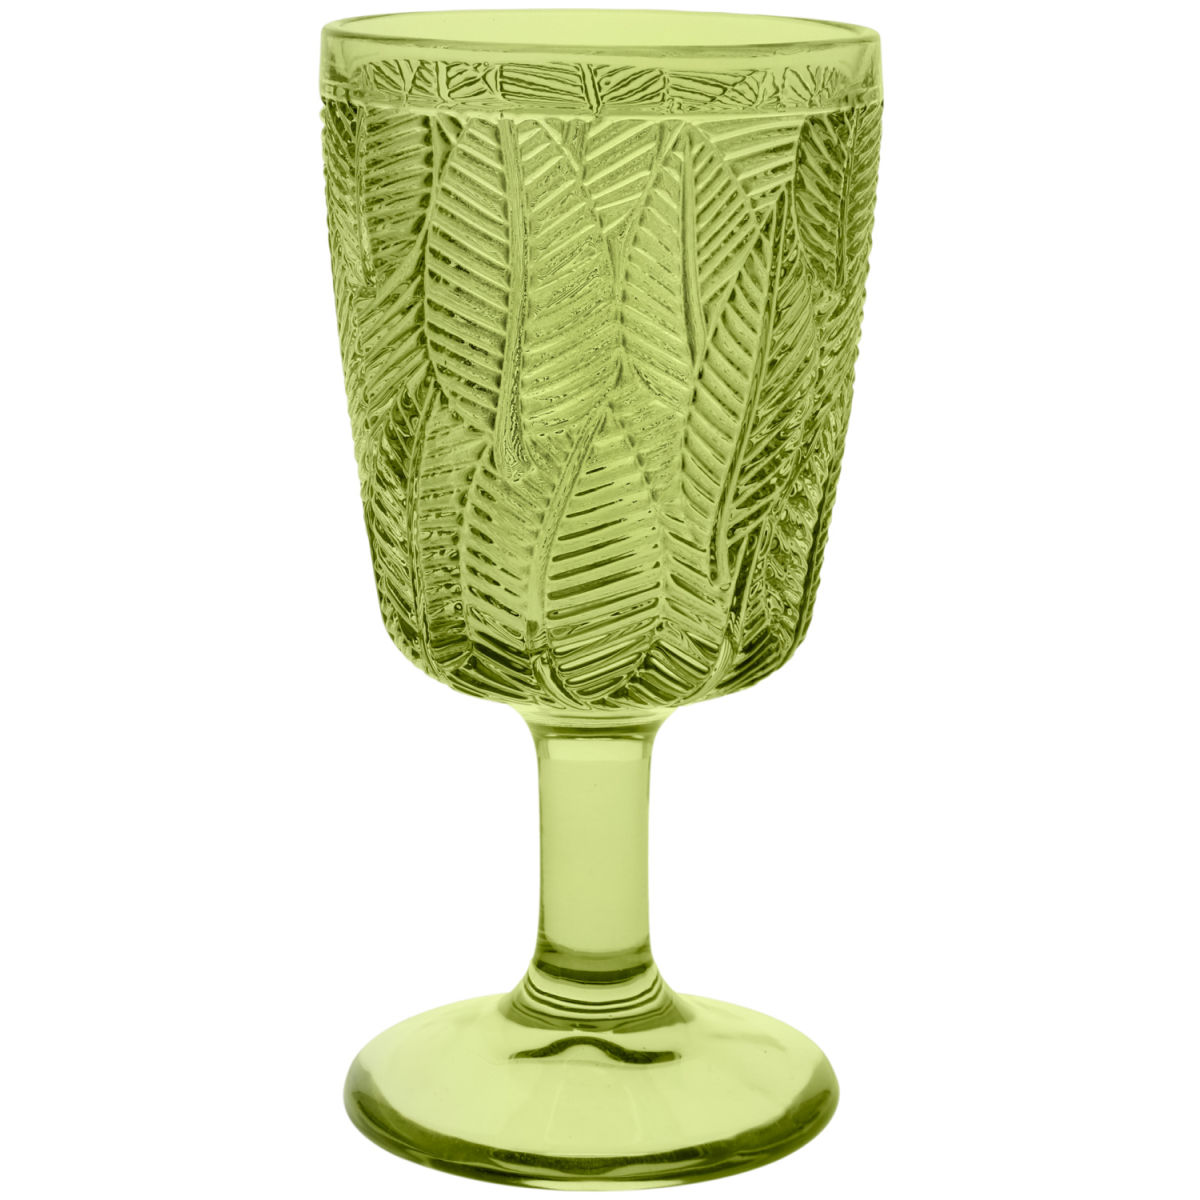 Vega Wijnglas Thea; 320ml, 8.3x17 cm (ØxH); groen; 6 stuk / verpakking